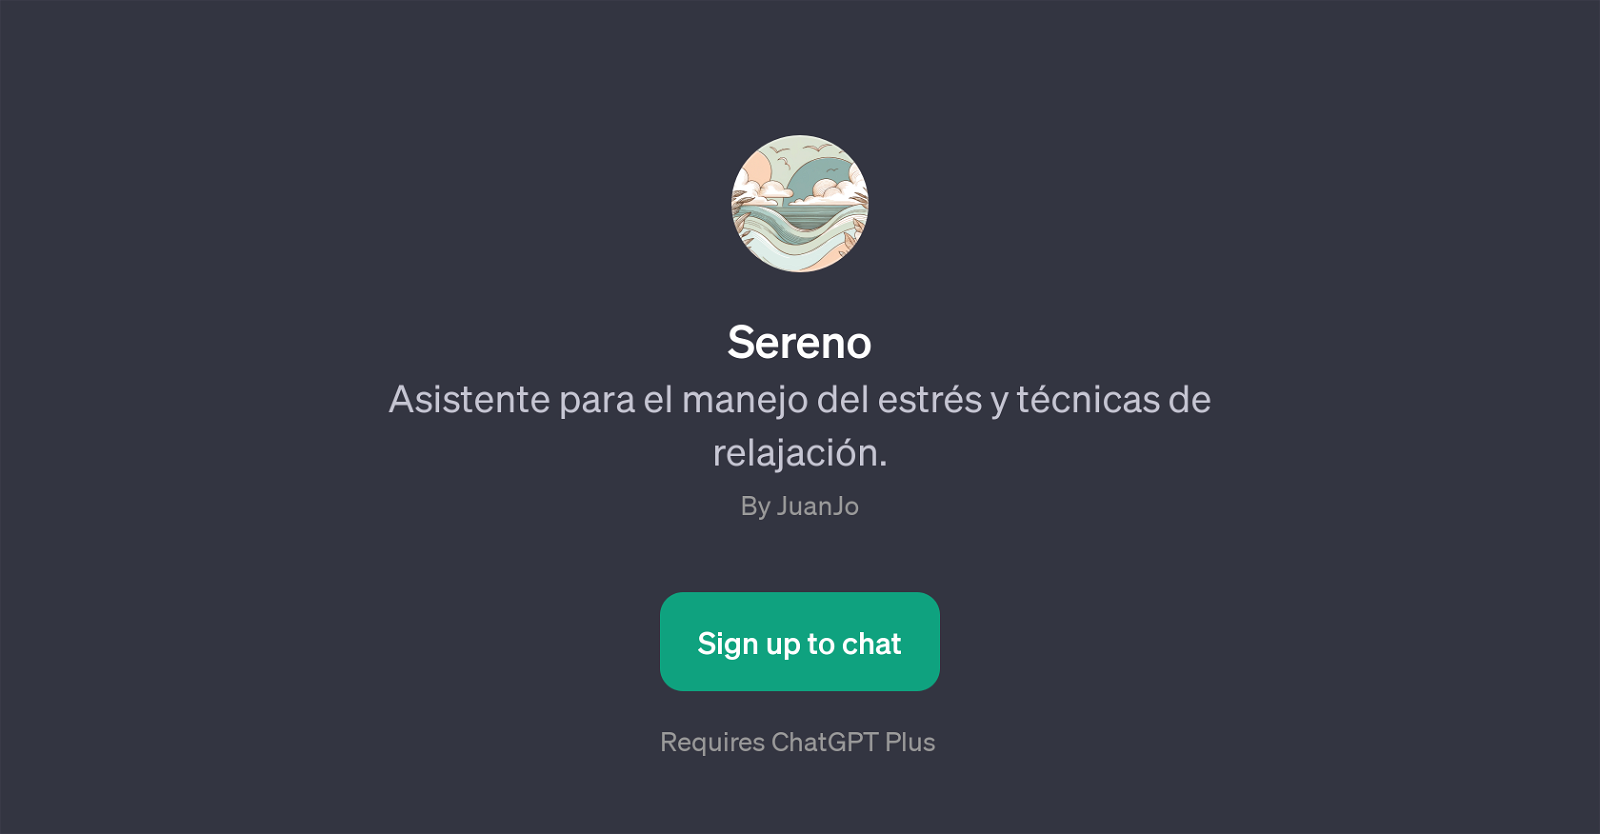 Sereno website